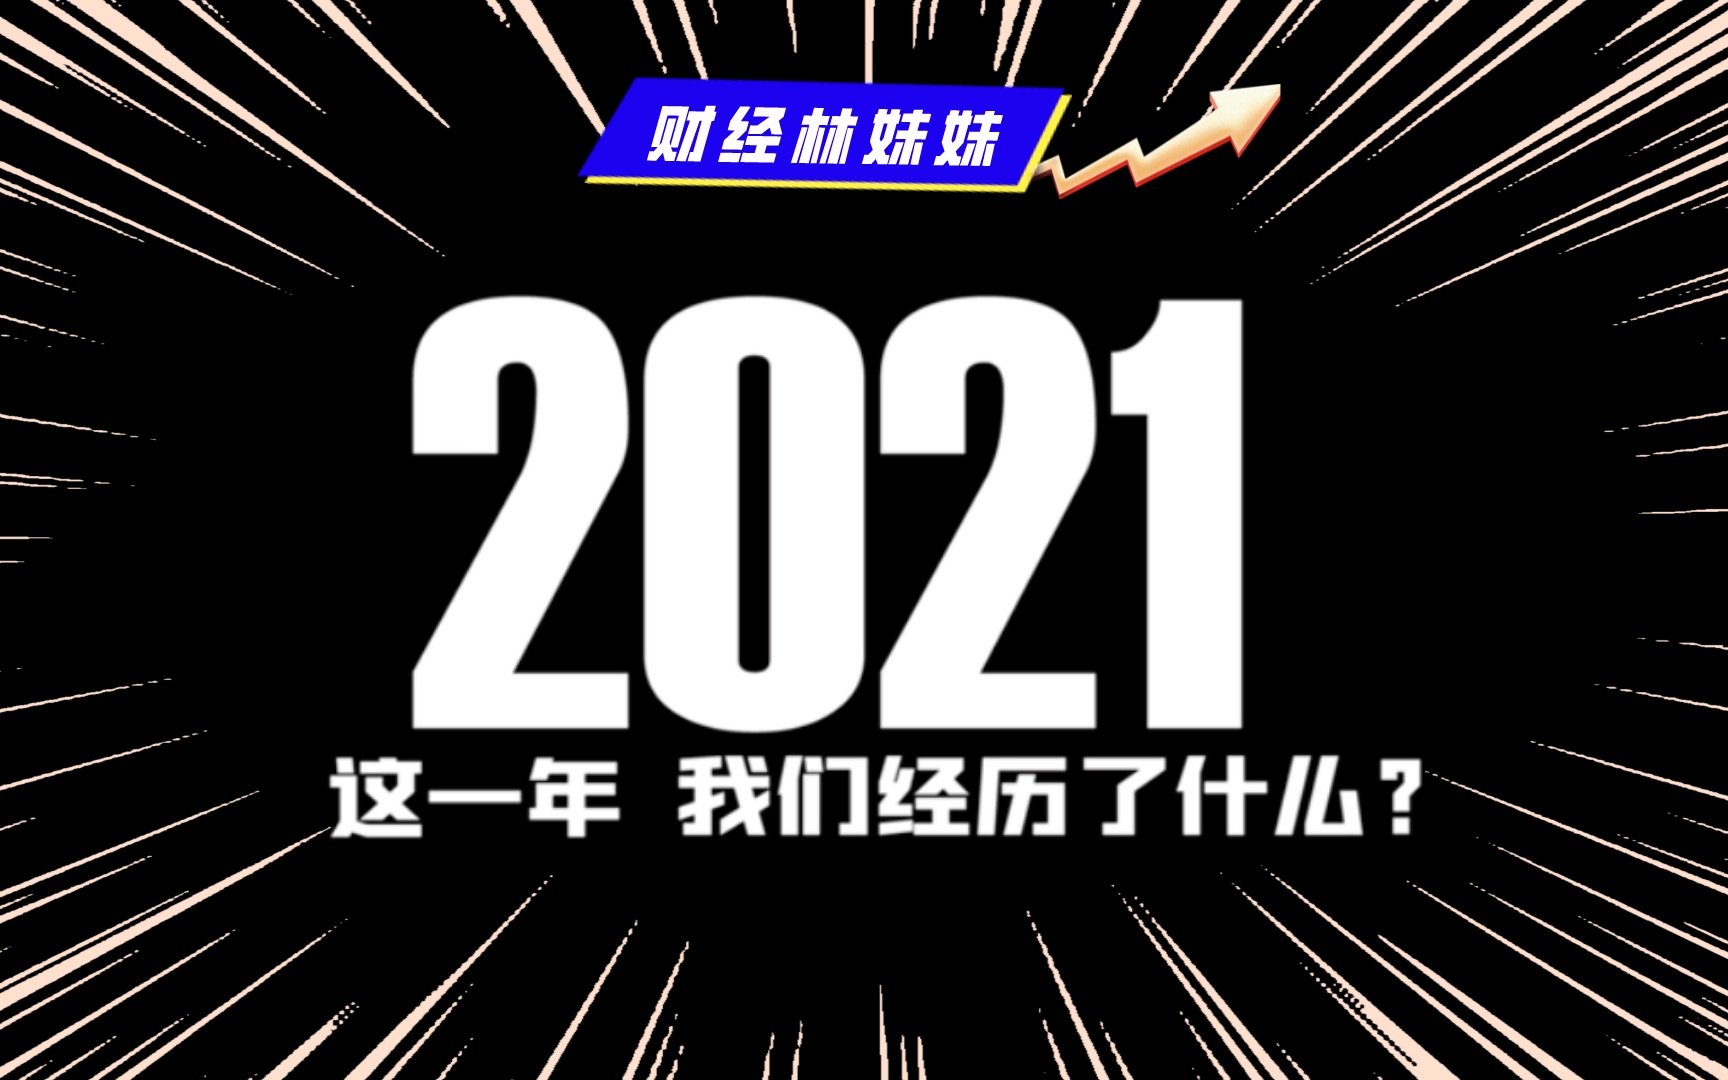 2021 再见!2022 你好!